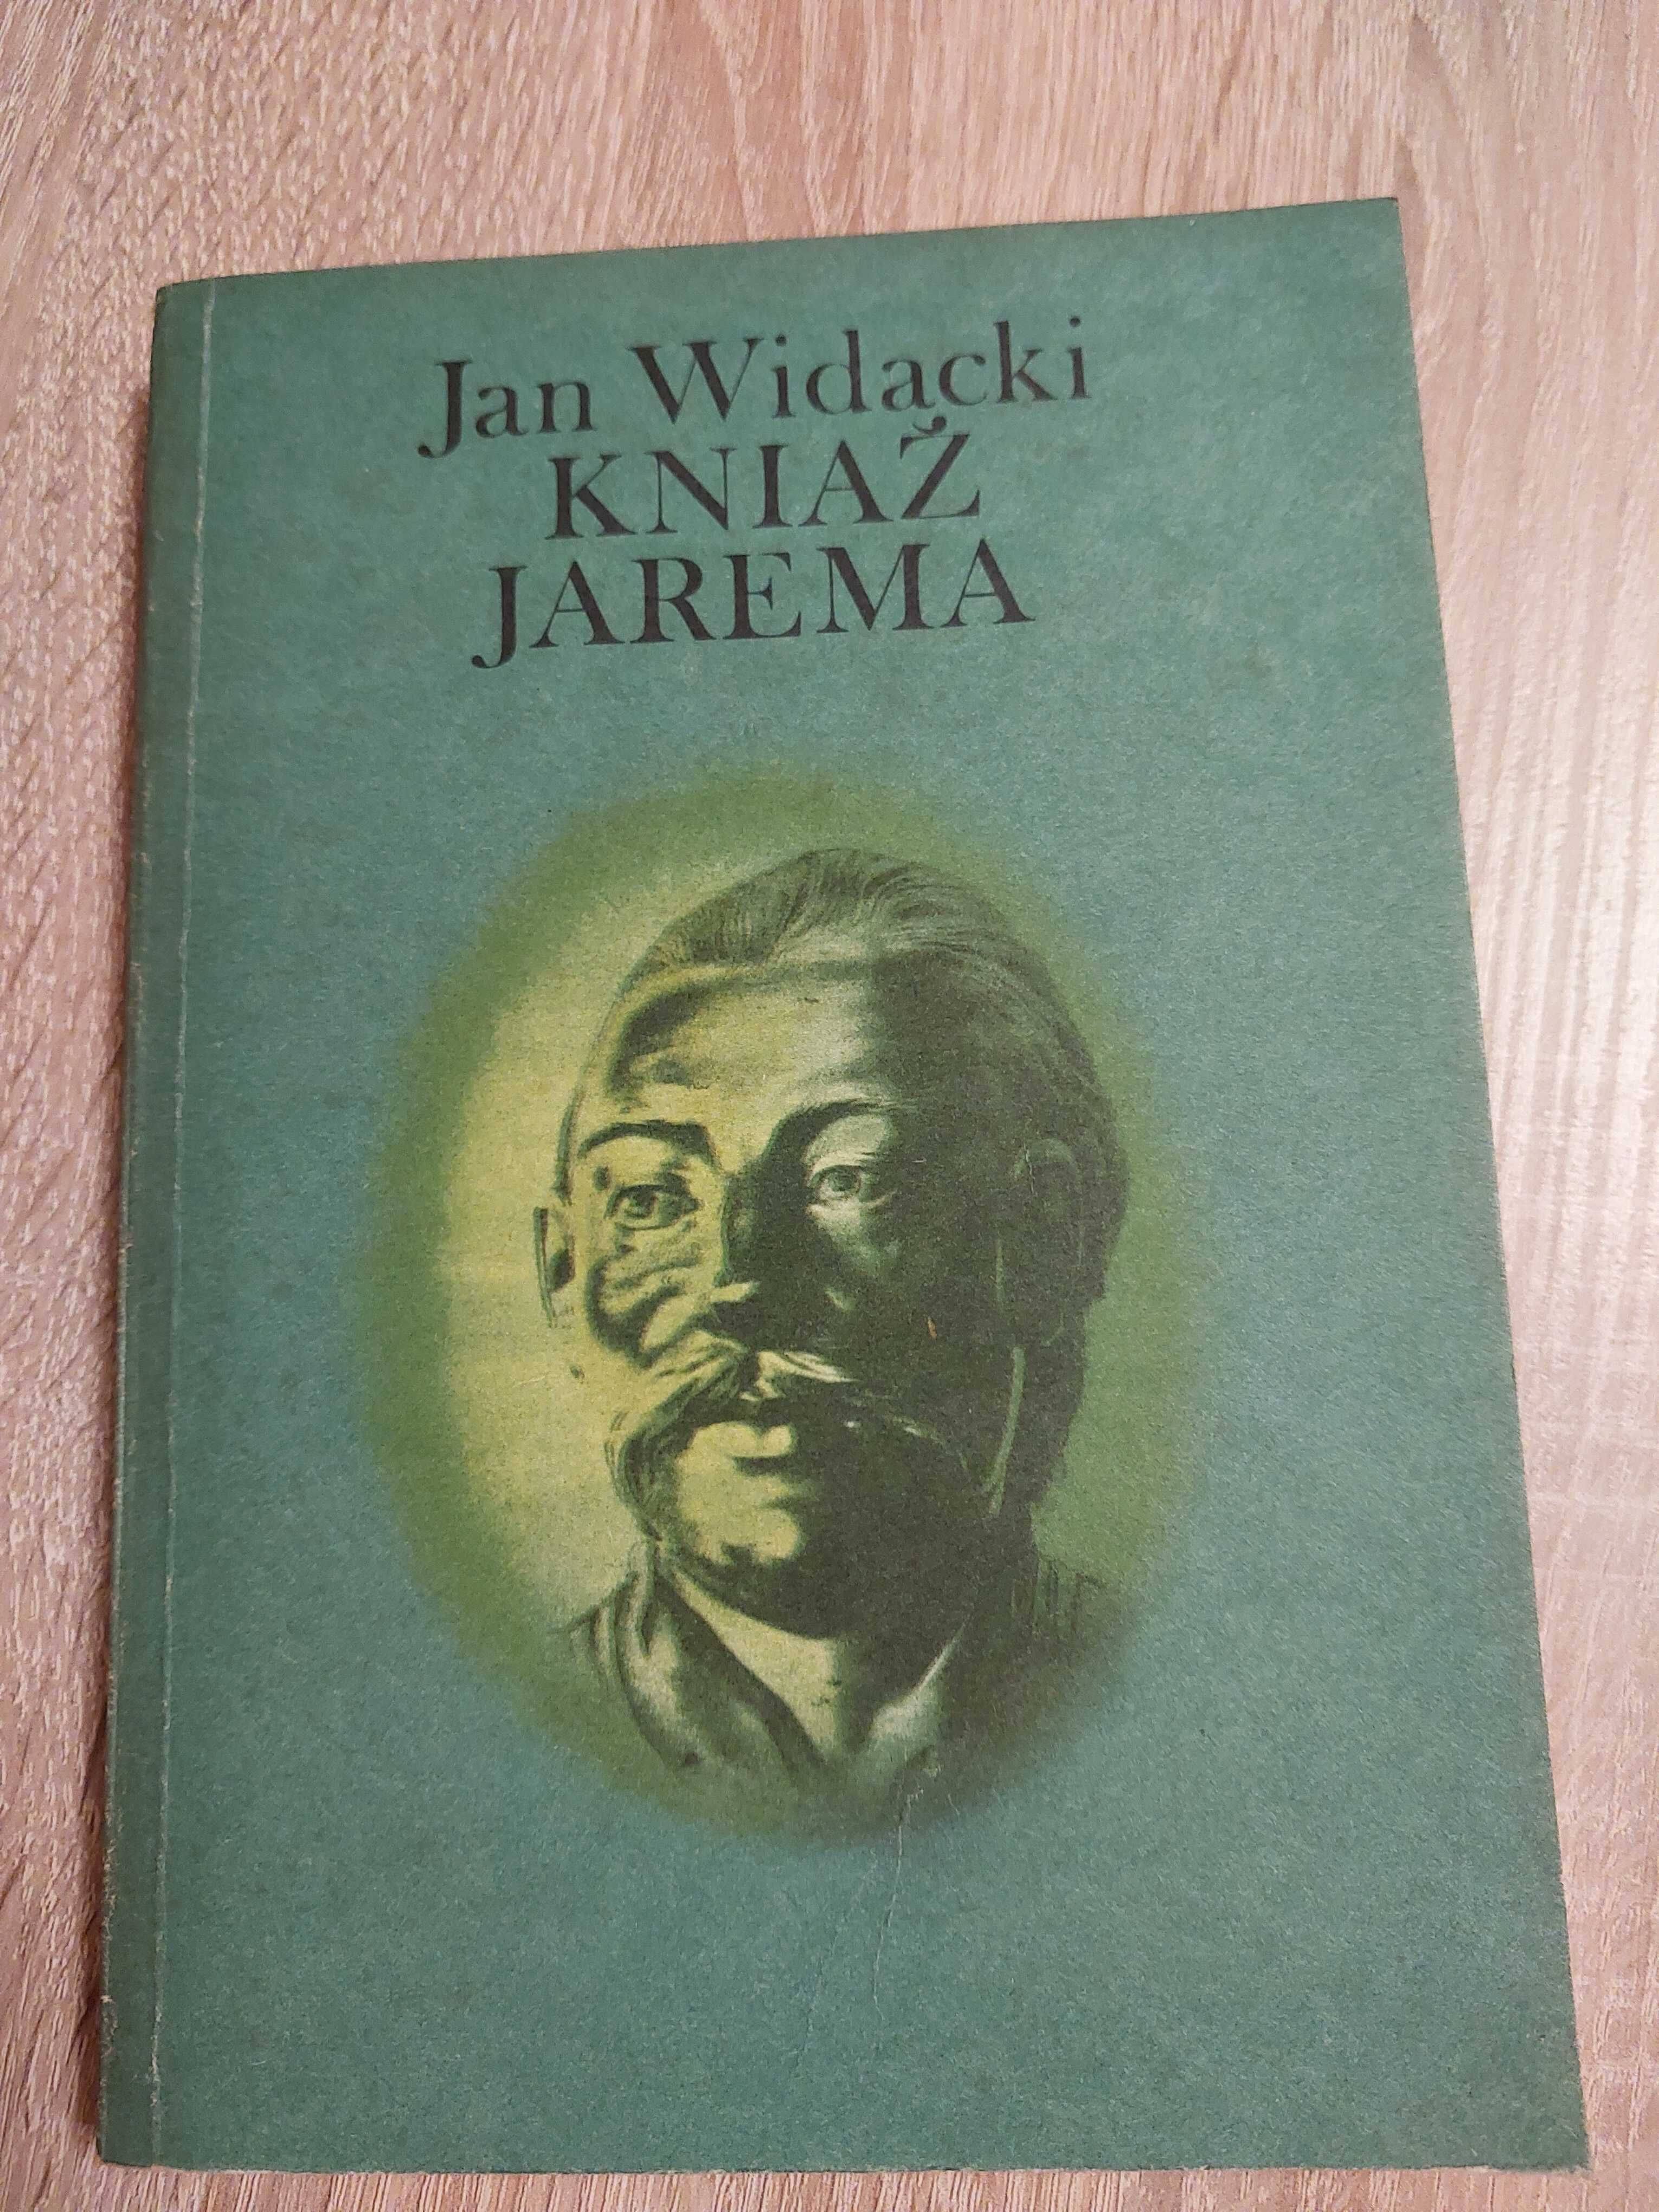 Jan Widacki,,Kniaź Jarema"